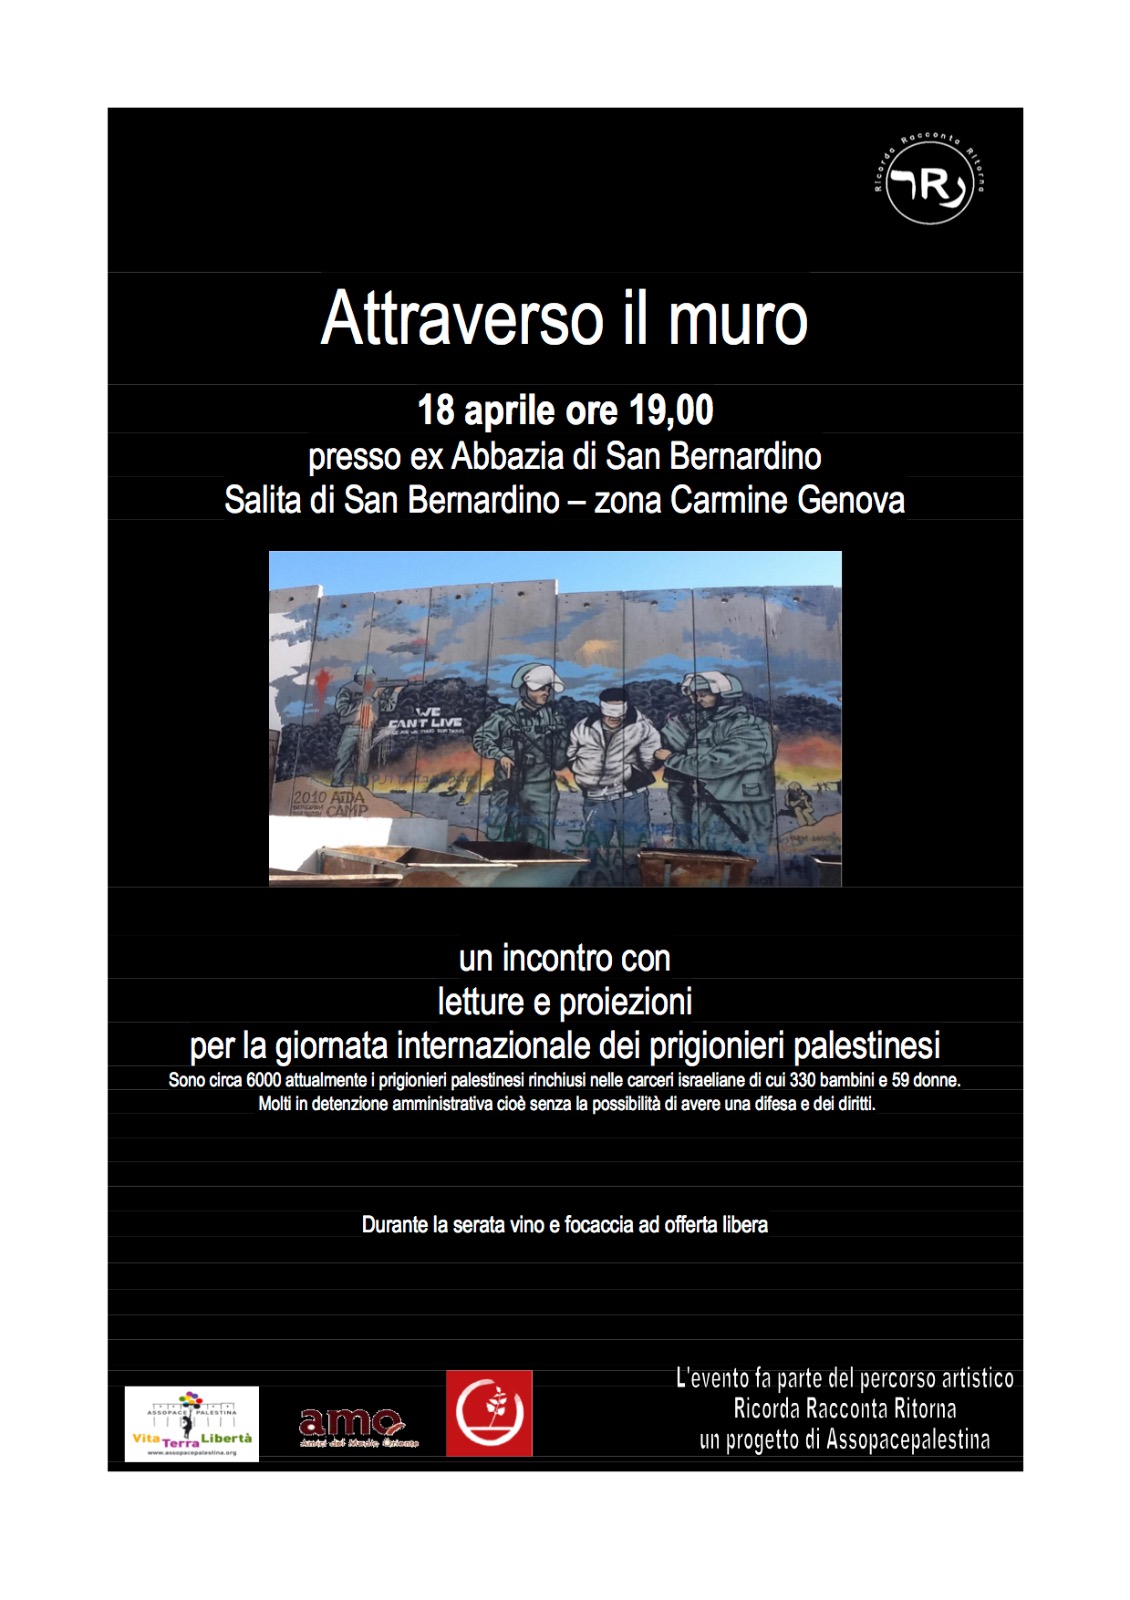 Genova, 18 aprile: letture e proiezioni per i prigionieri palestinesi.